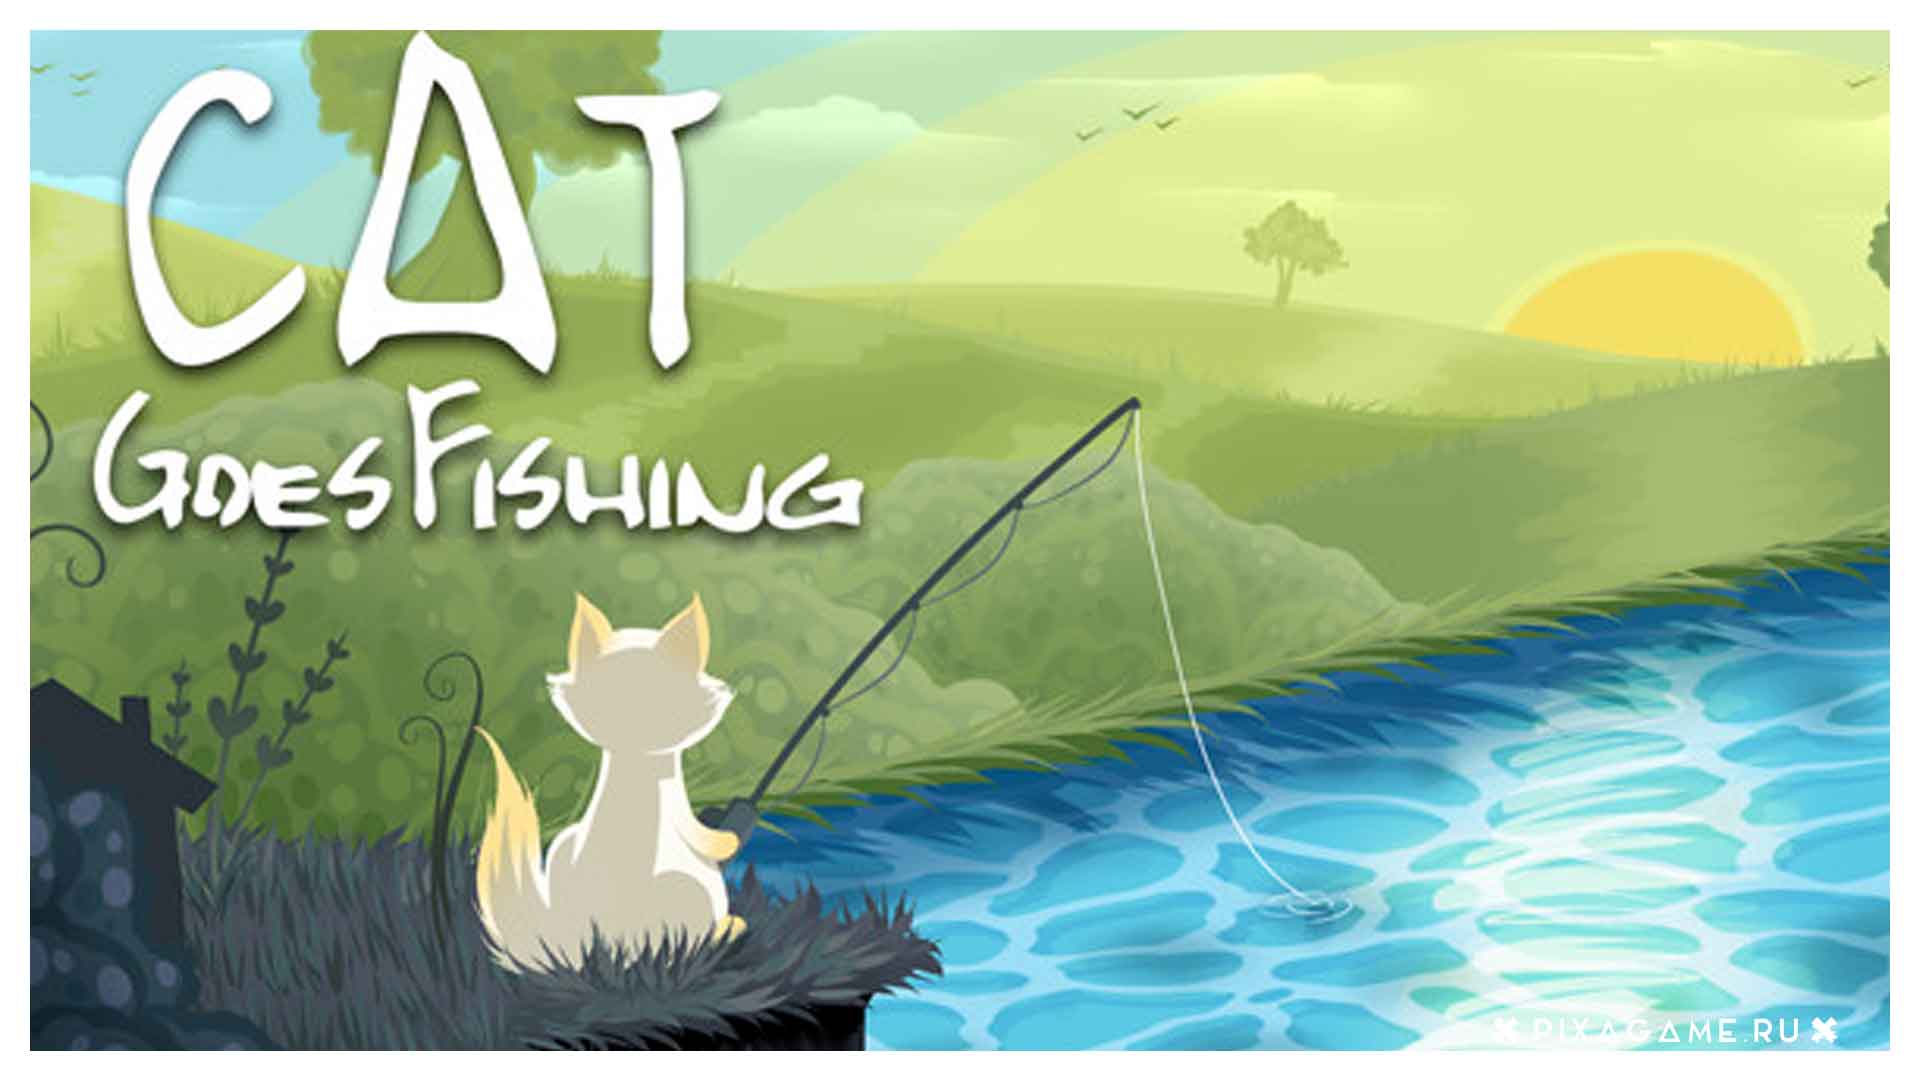 Cat fish на андроид. Кот Рыбак игра. Кэт Гоес фишинг. Игра Кошачья рыбалка. Go Fishing игра.